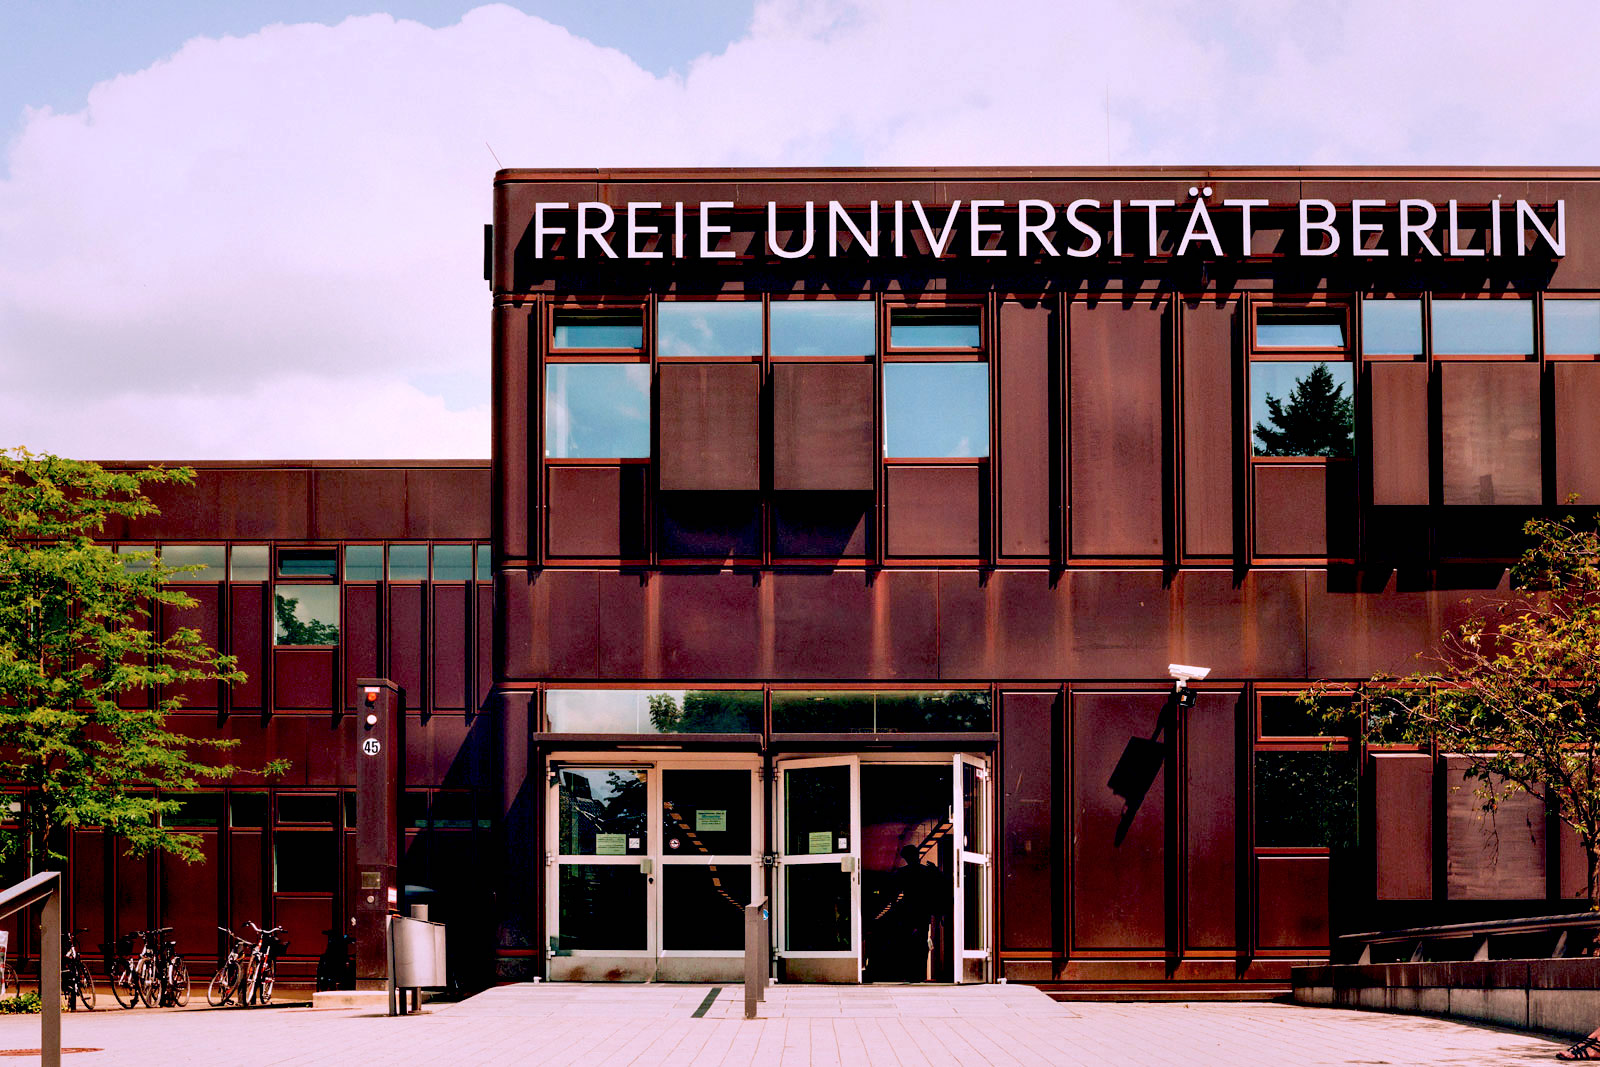 دانشگاه آزاد برلین، یکی از محبوبترین دانشگاه های آلمان